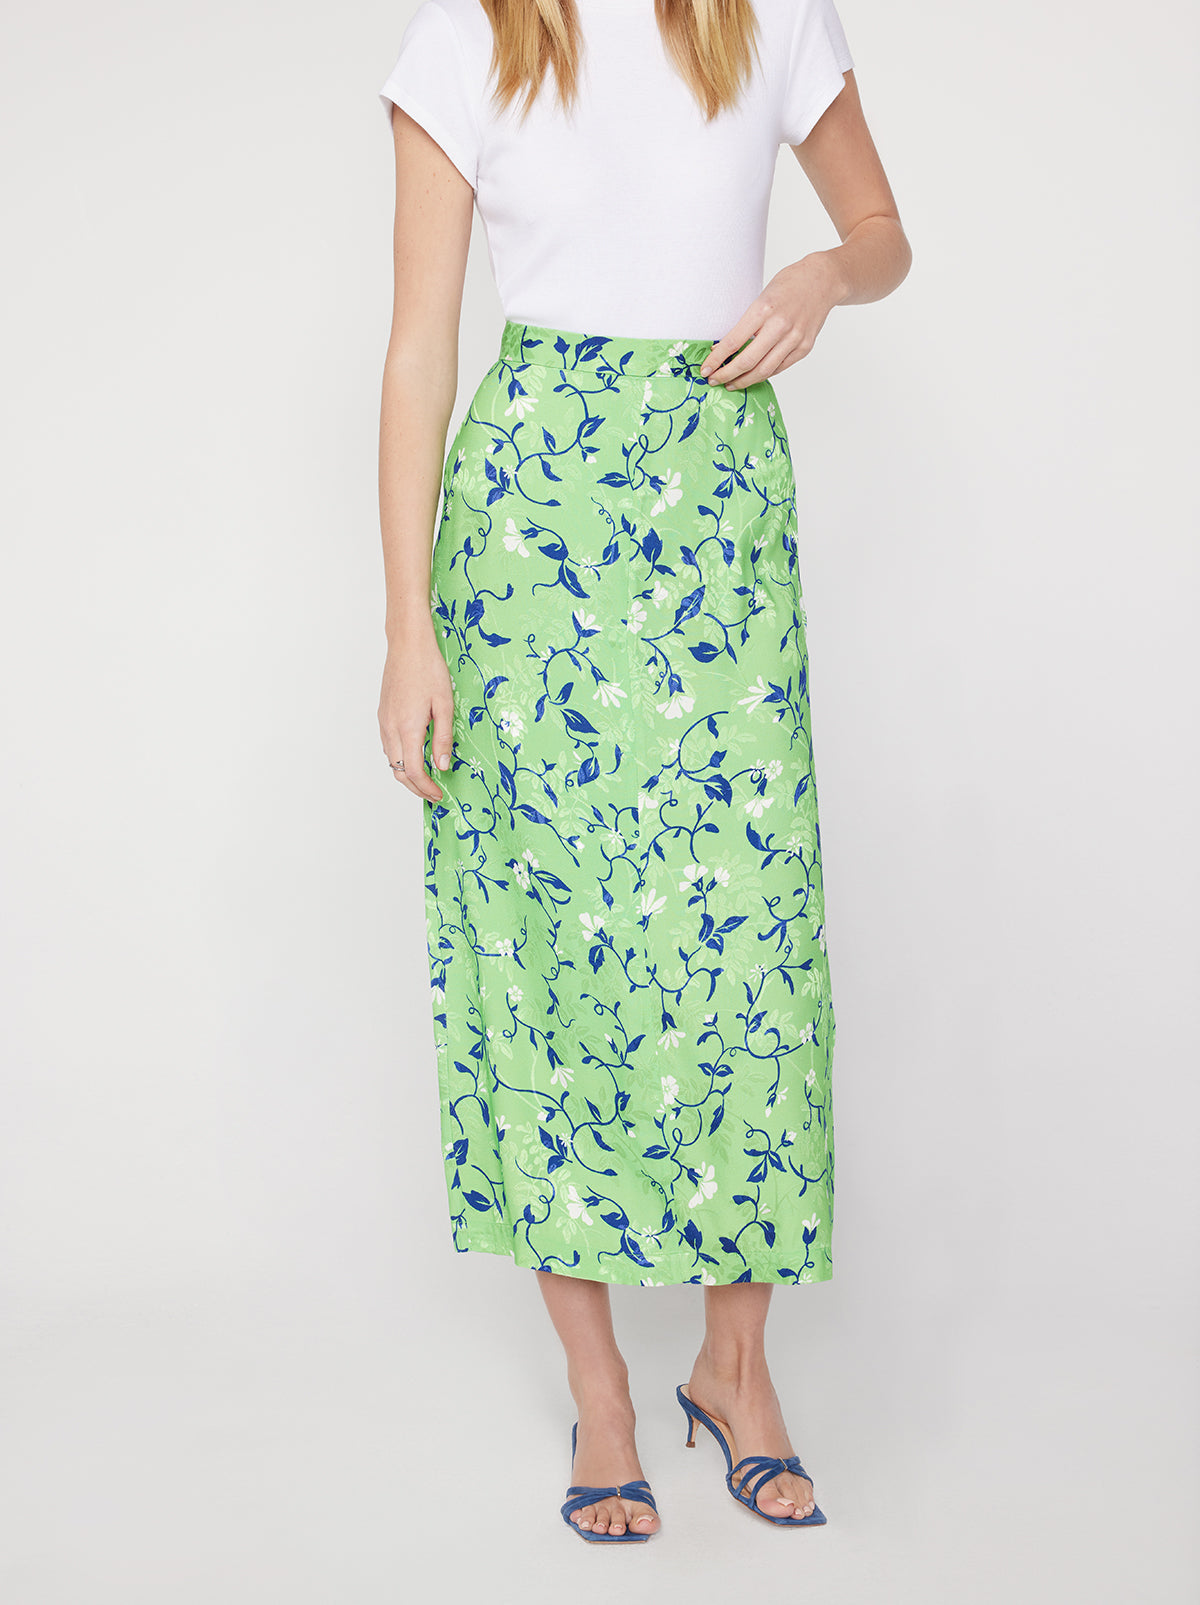 Laurel Green Vine Print Skirt | KITRI Studio